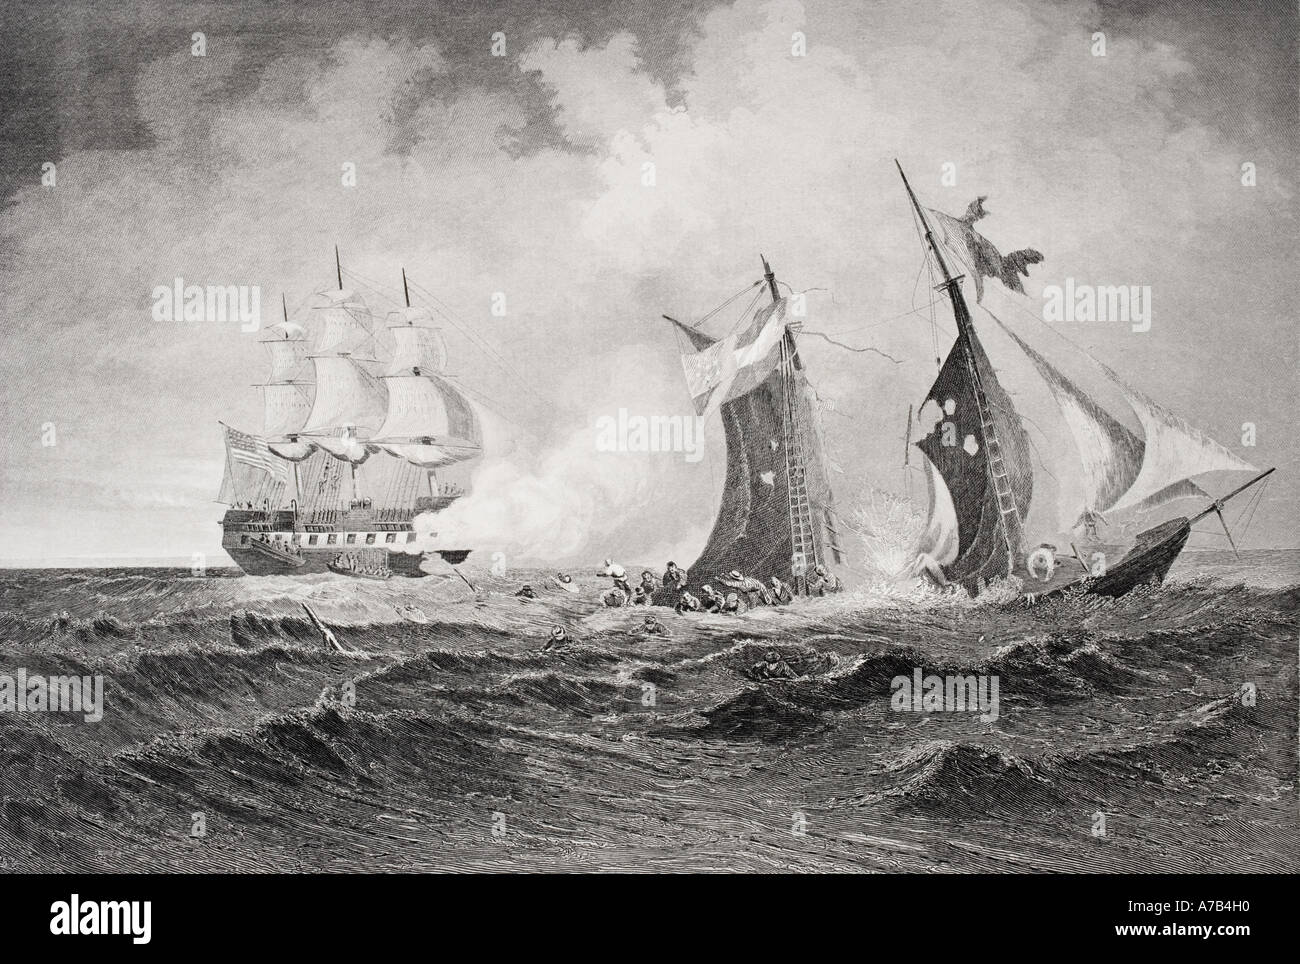 Zerstörung der privateer Petrel durch den St Lawrence während des Amerikanischen Bürgerkrieges, 1861. Künstler Paul Manzoni. Stockfoto